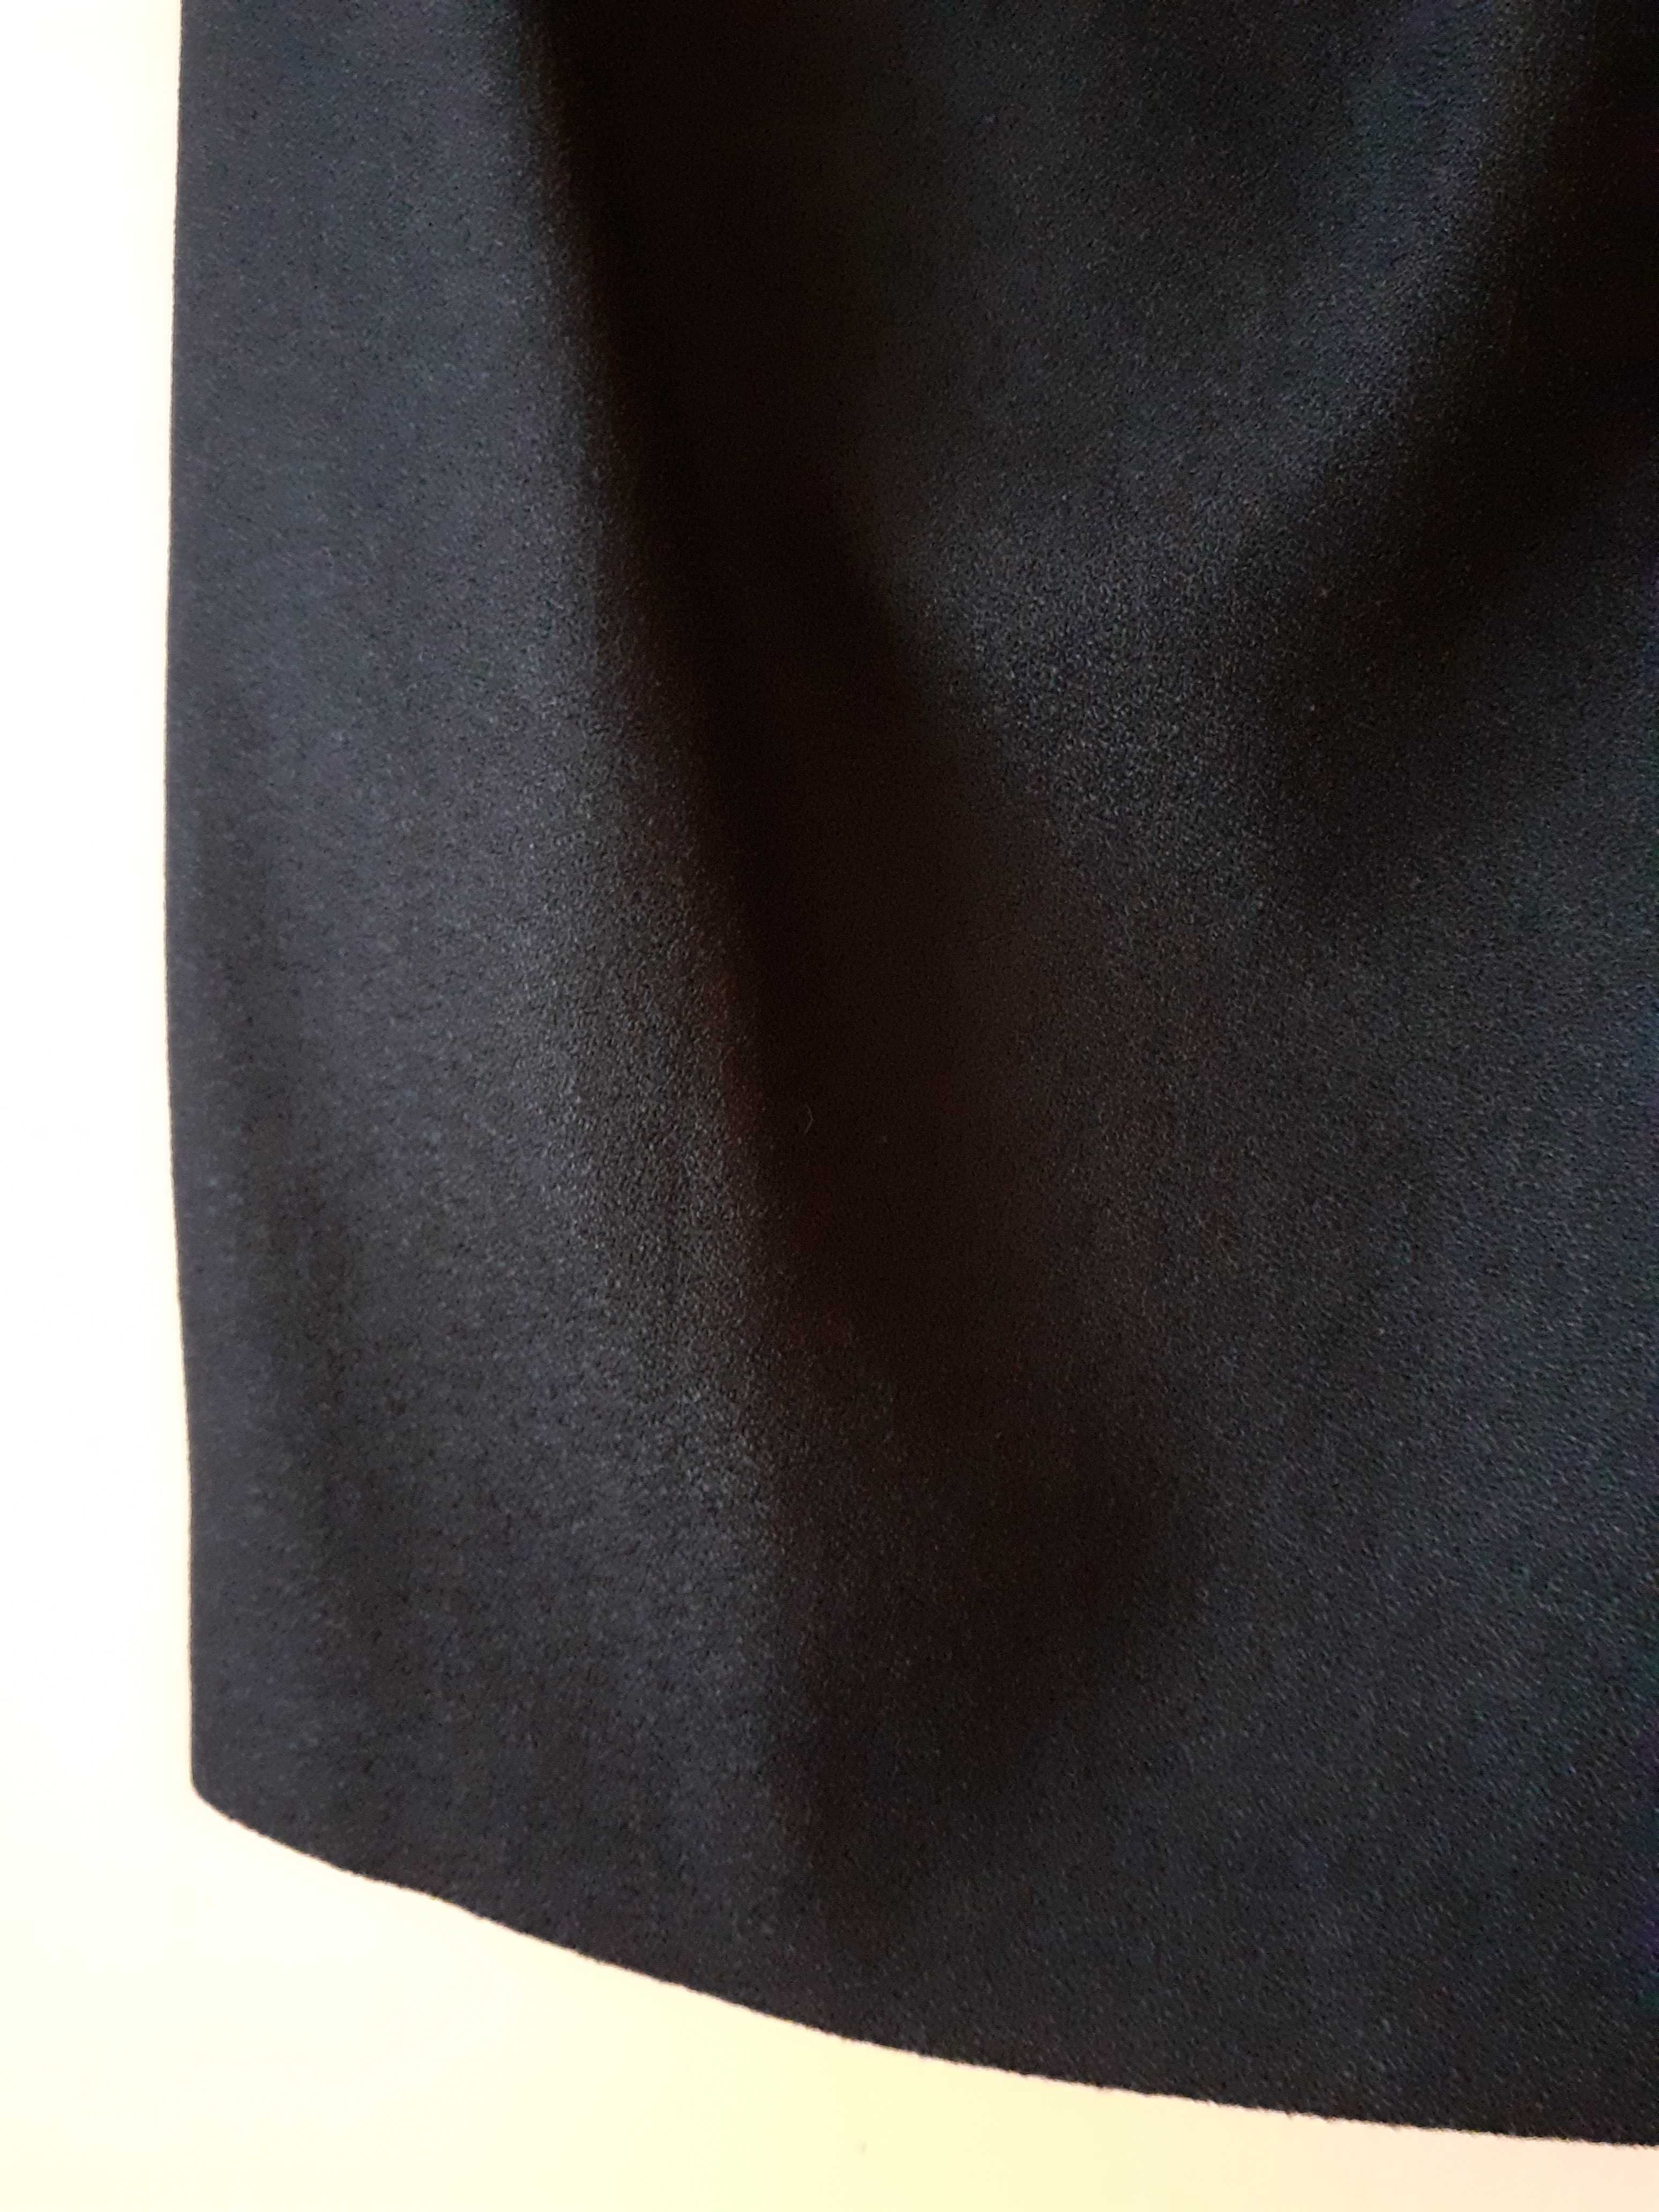 38 40 42 Spódnica midi czarna wełniana 100% wełna basic vintage retro